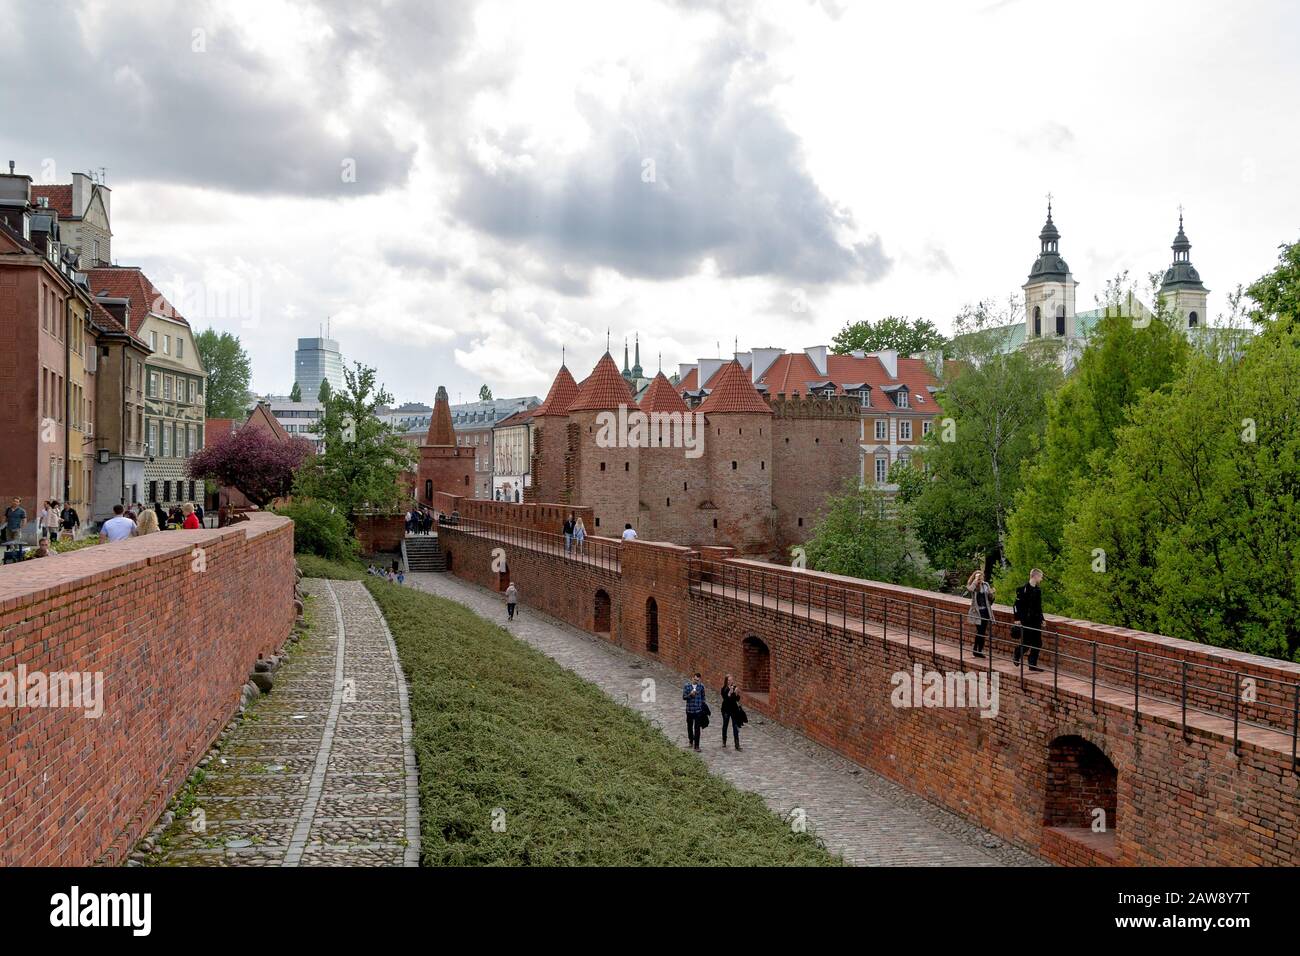 Le people marche sur les murs de briques fortifiés de la vieille ville de Varsovie avec la tour Barbican en vue Banque D'Images